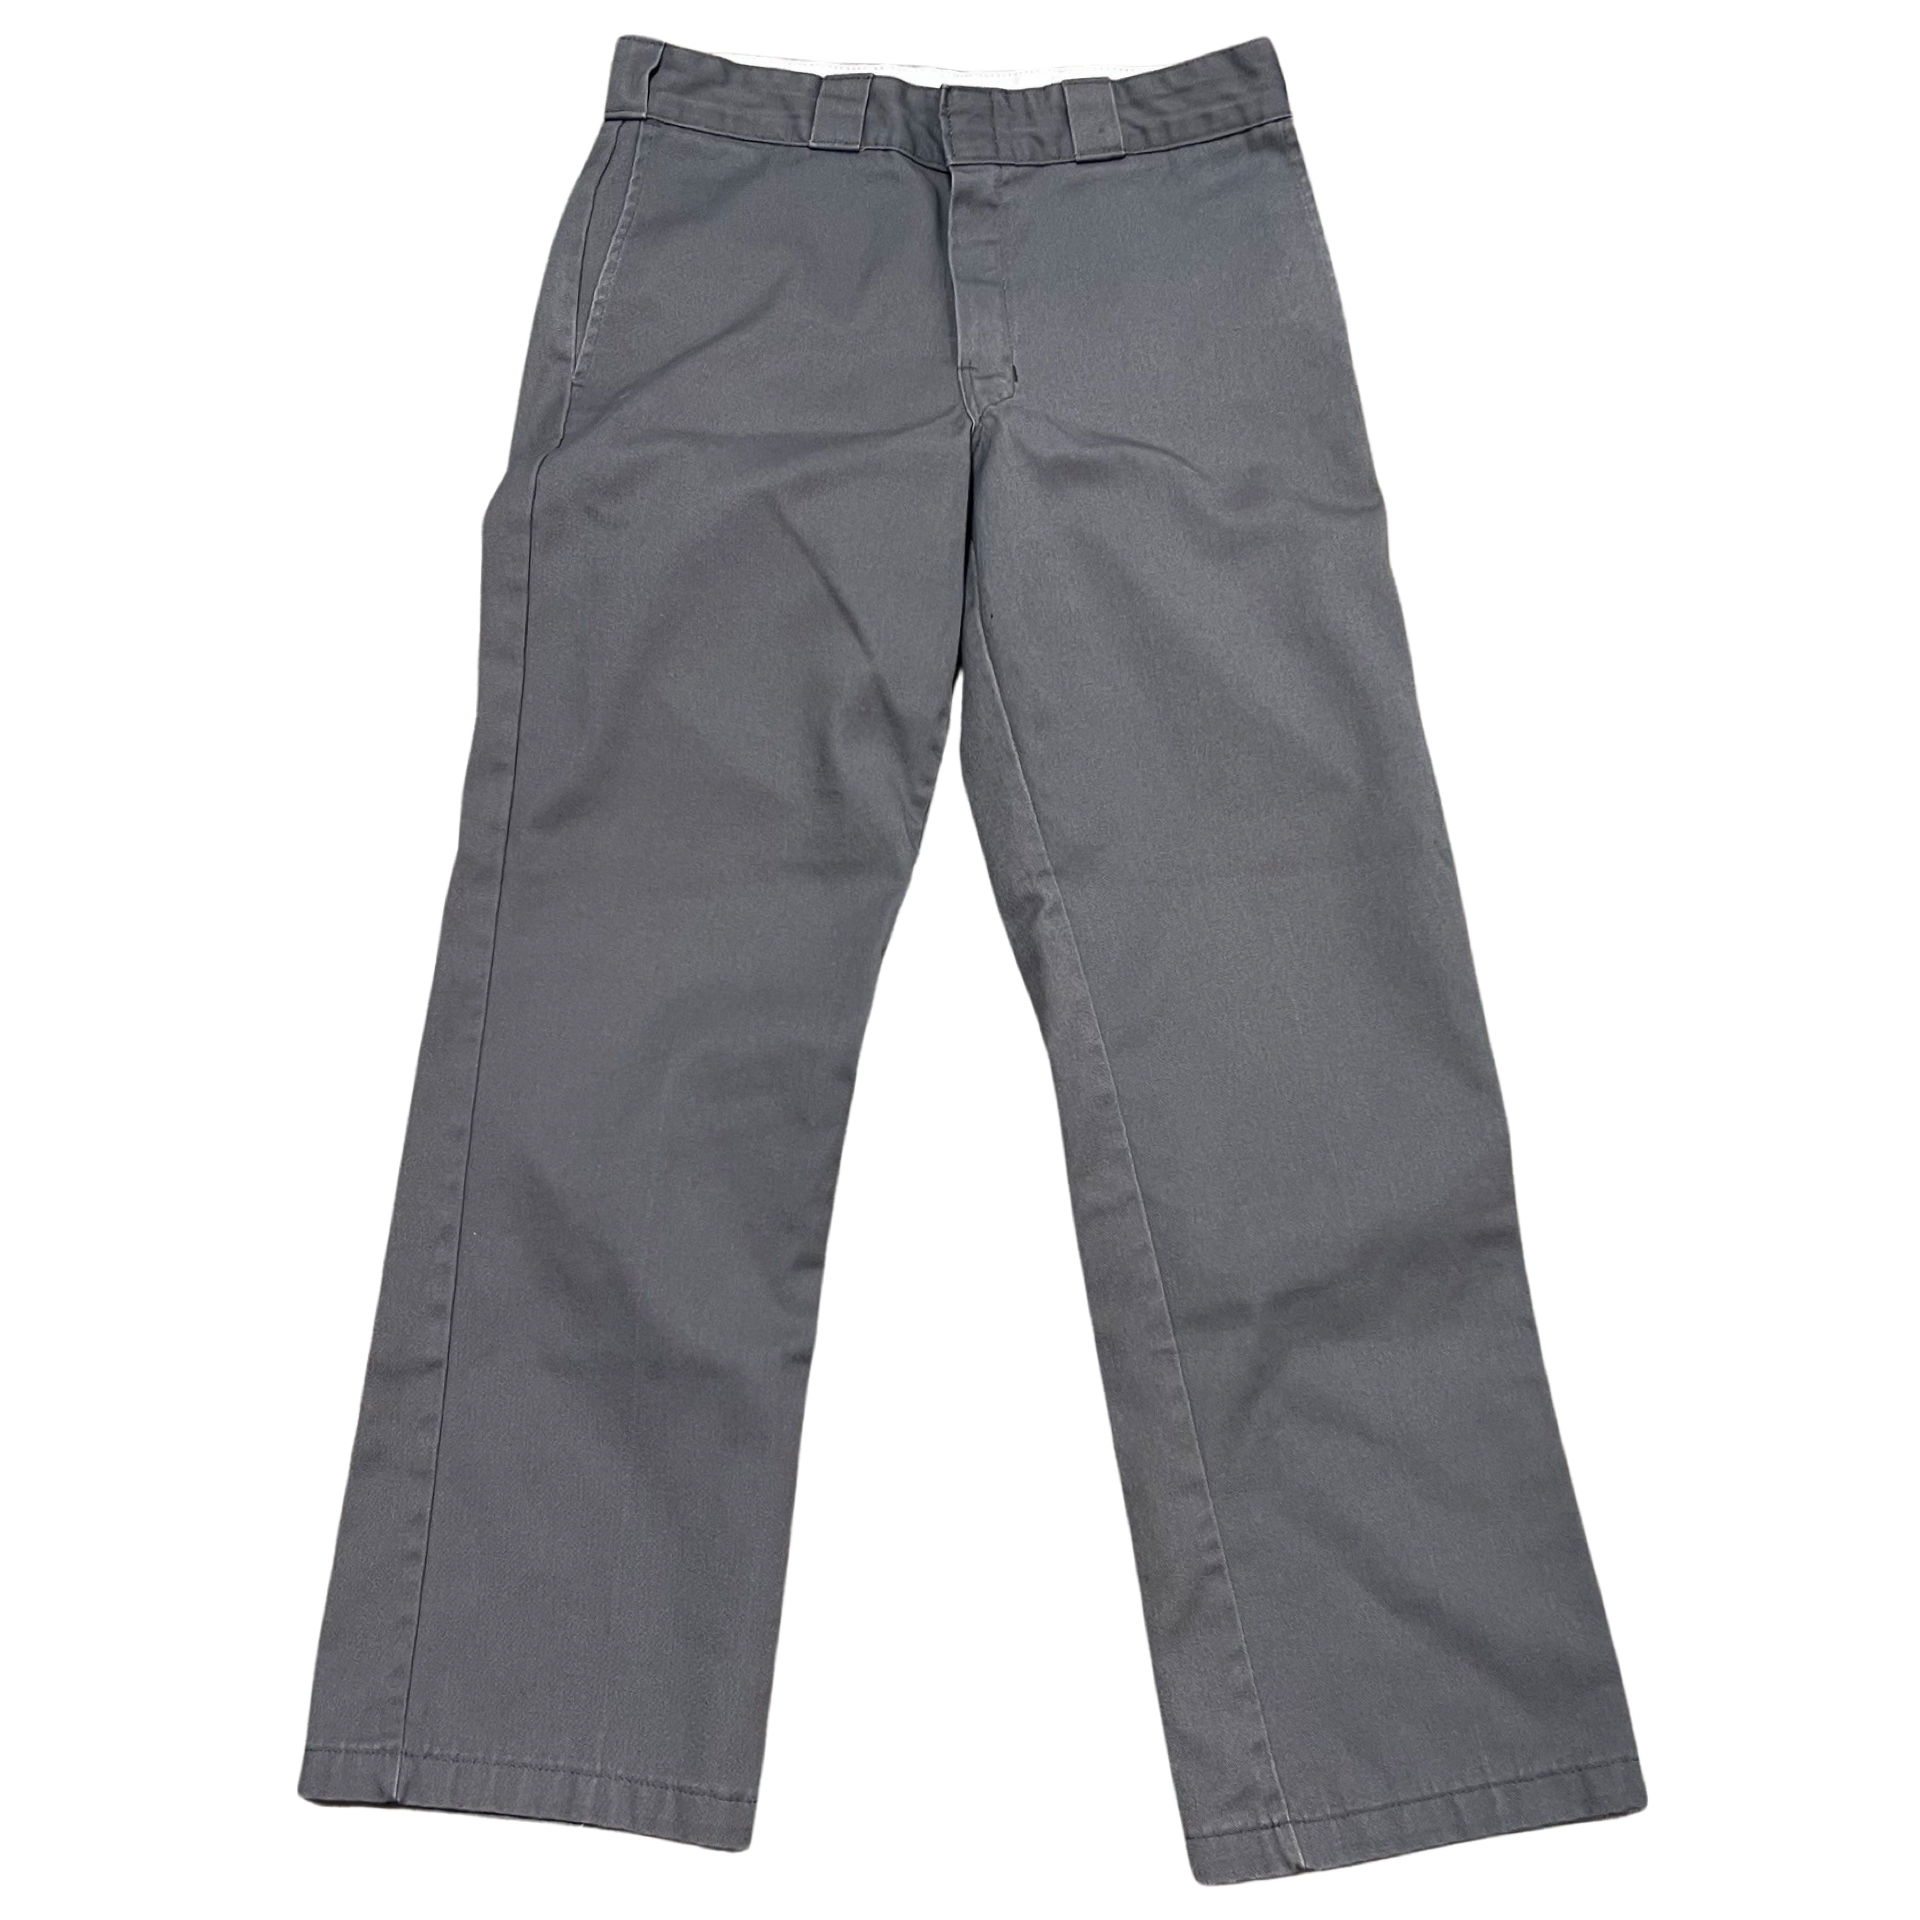 Vintage Dickies Workwear Pants (28x29) – Feels So Good